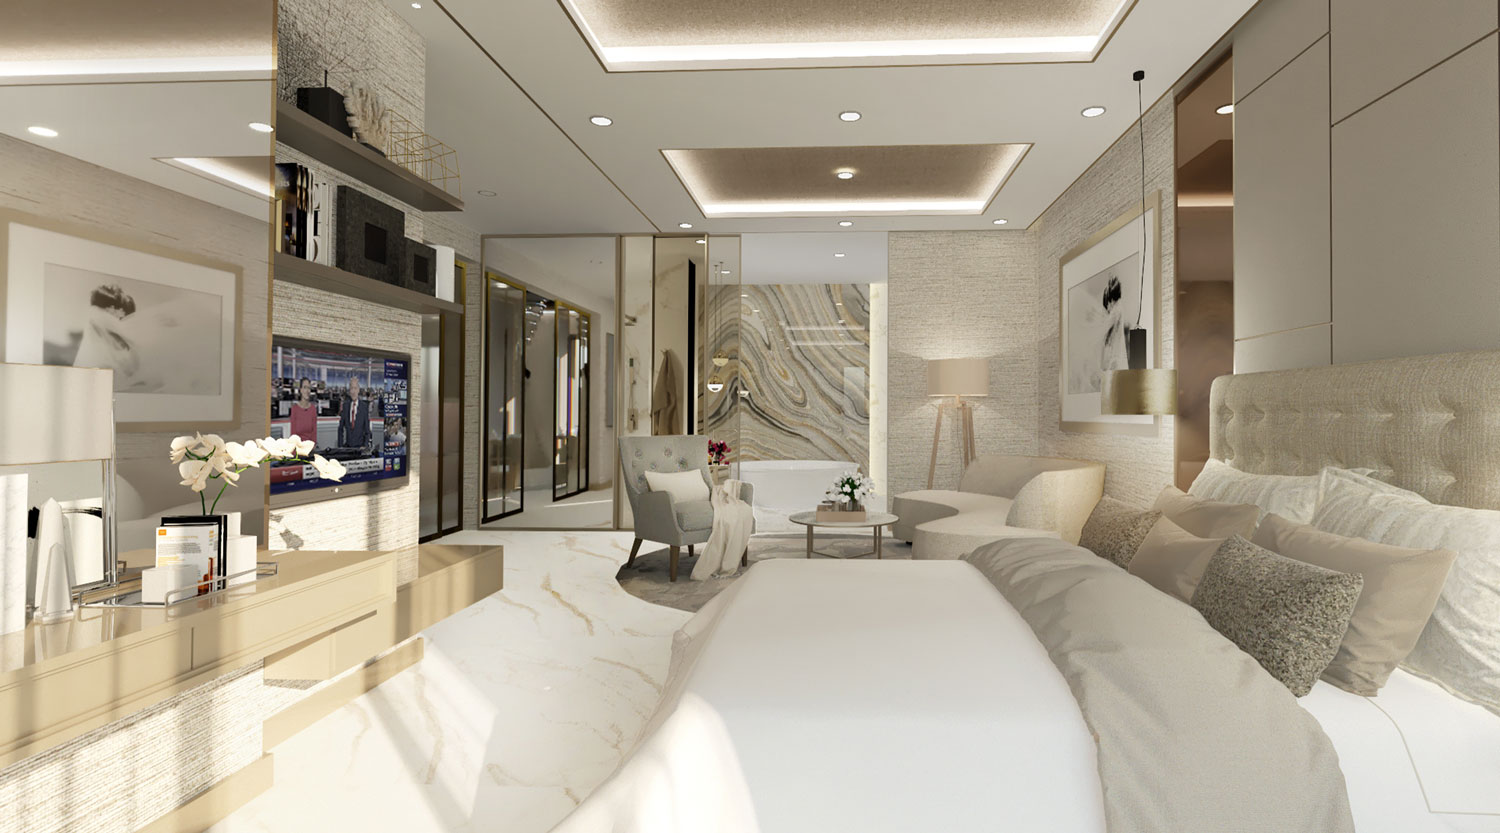 hotel bedroom design